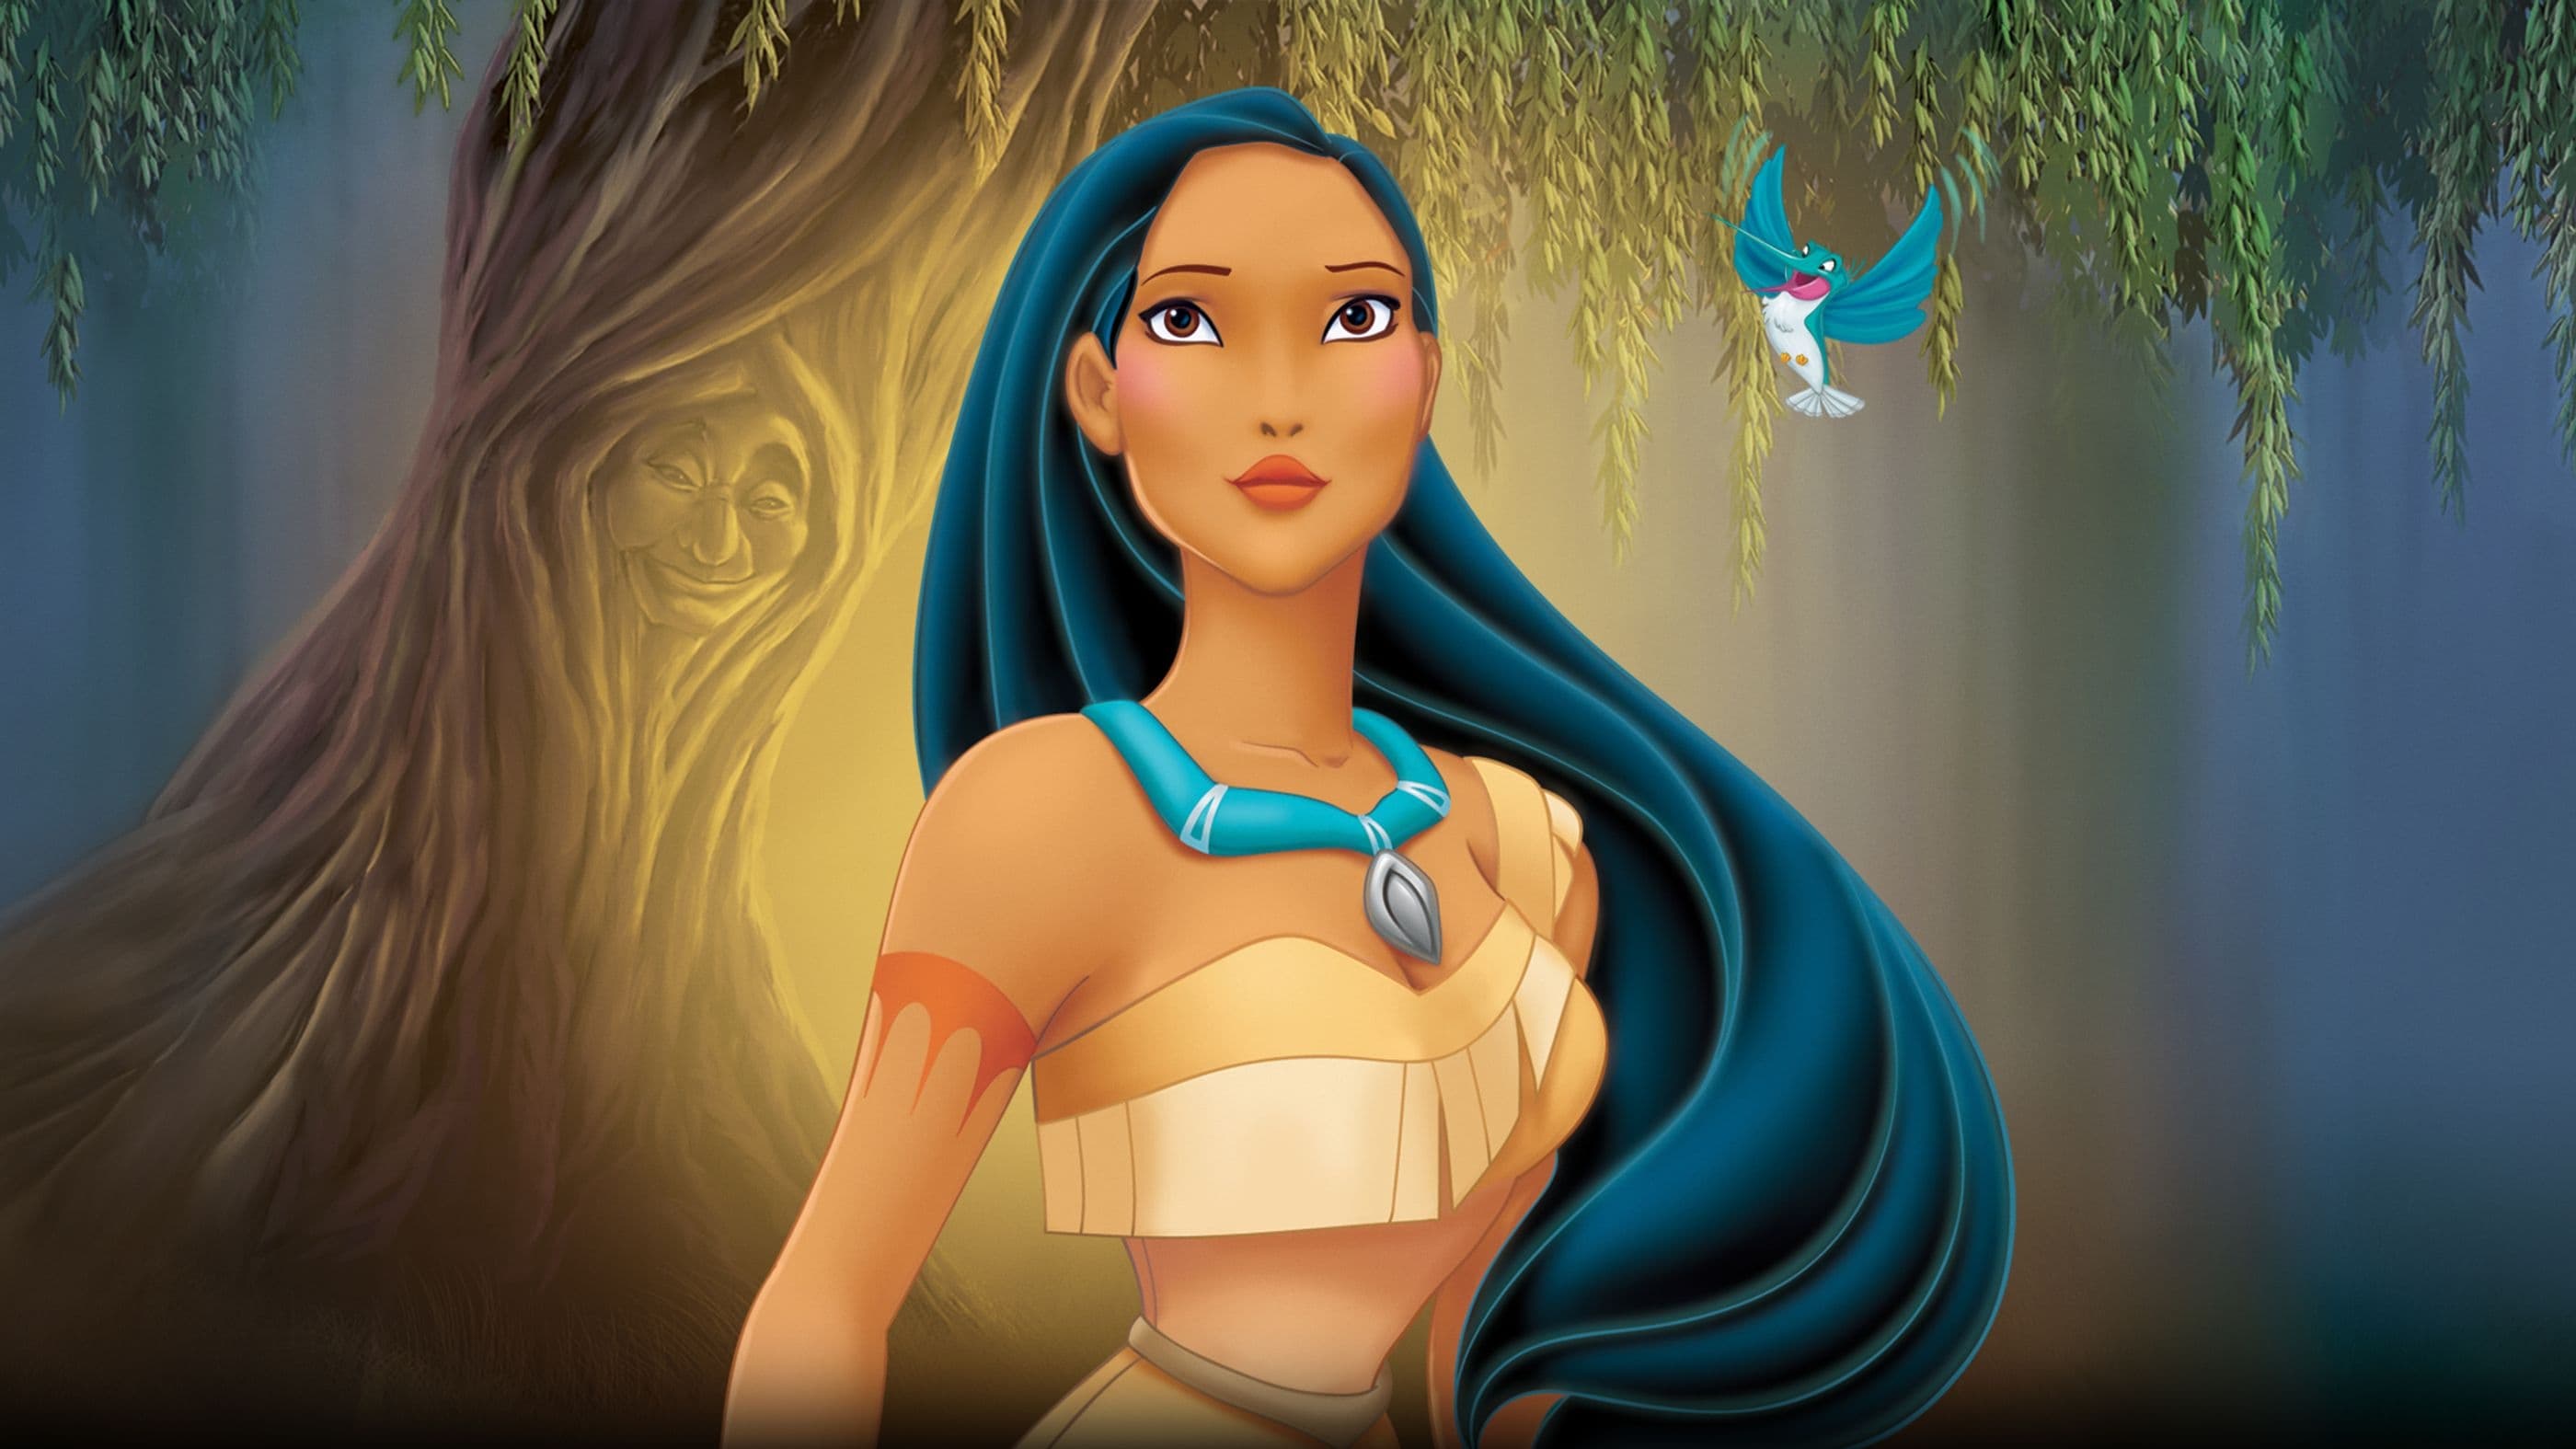 Image du film Pocahontas, une légende indienne tvv7qjbmnf2ltw3melxl1remxzyjpg